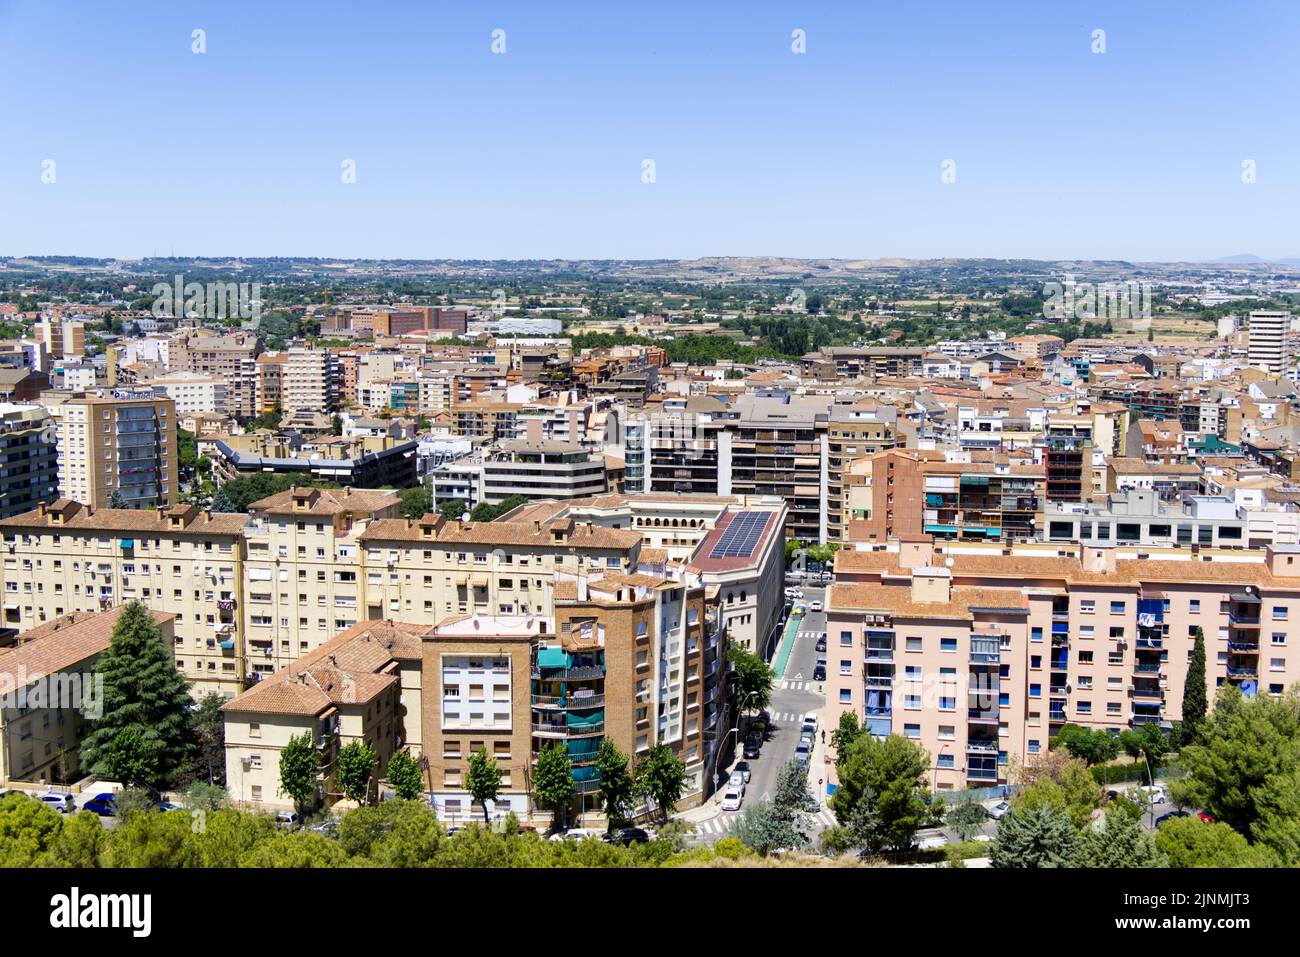 Vista de Lleida desde Castell del Rey Foto de stock